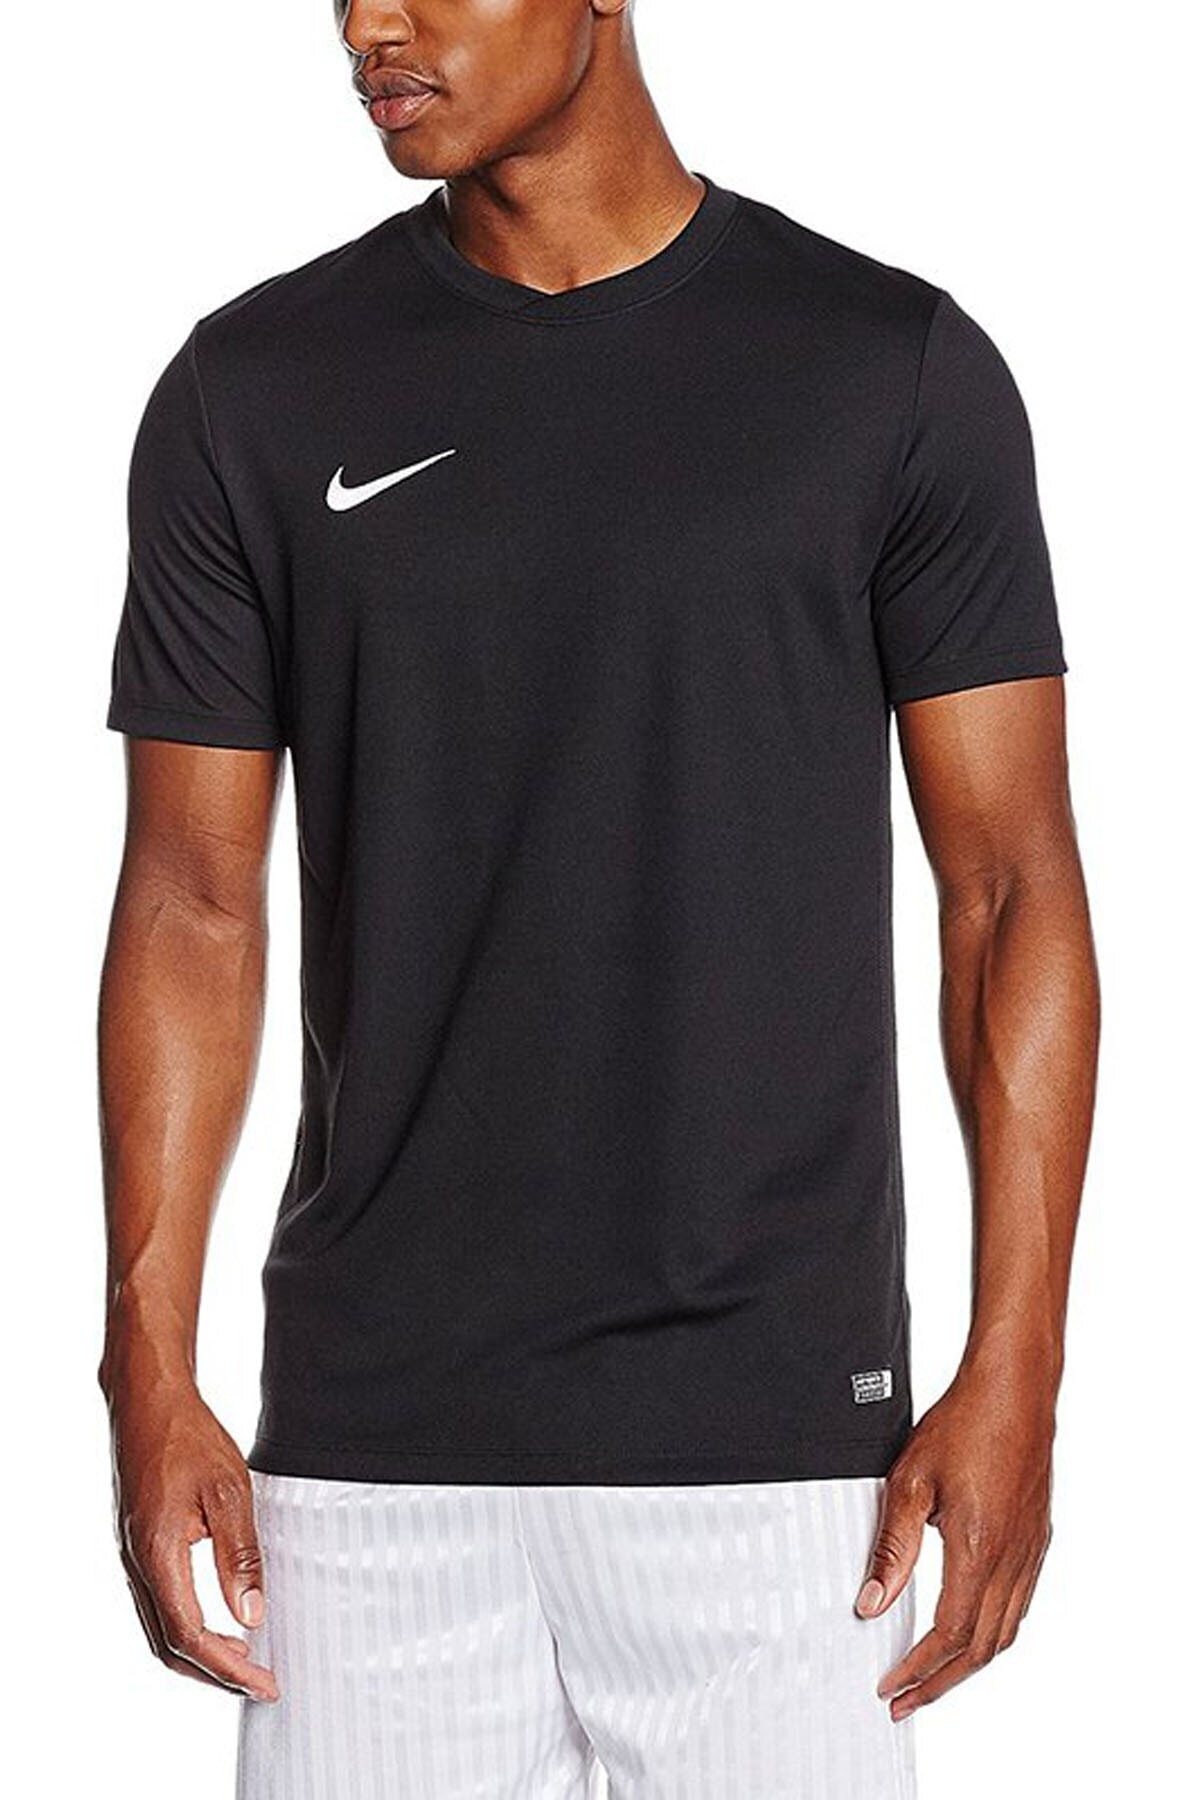 Nike Erkek Siyah T-shirt Ss Park Vı Jsy 725891-010